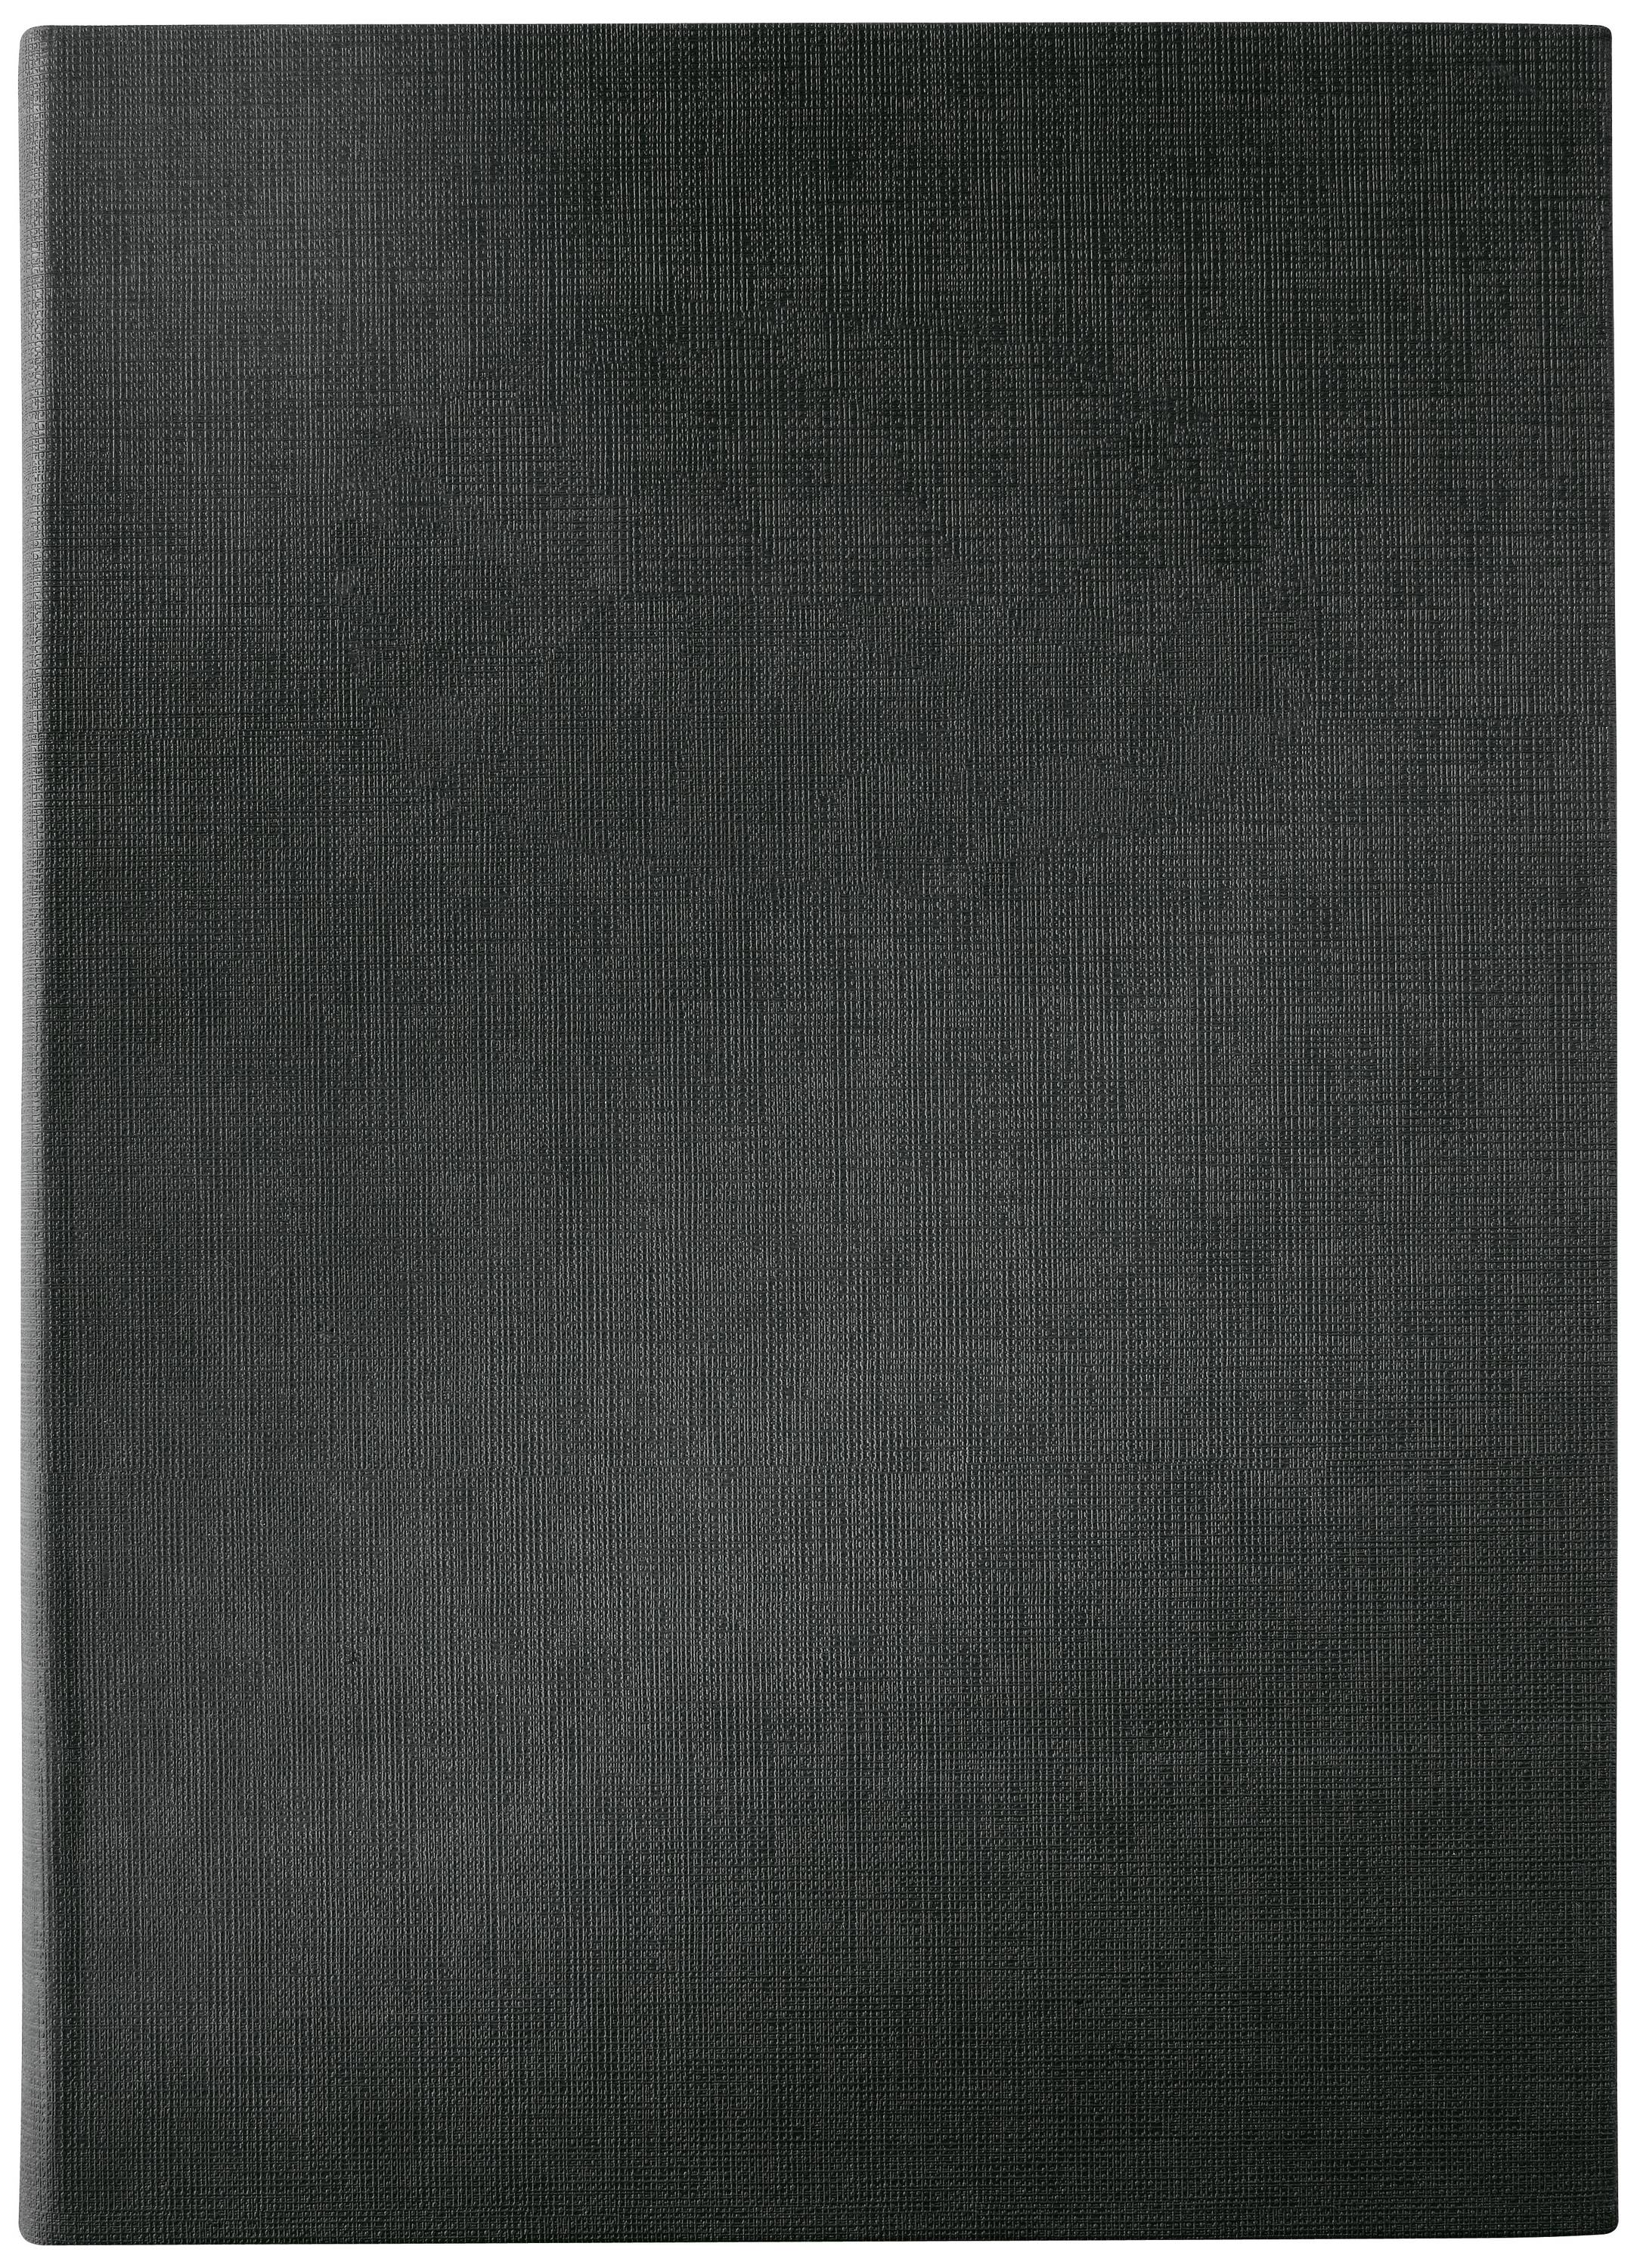 SIGEL Speisekarten-Mappe, A4, schwarz, Gummi-Bindung, blanko aus Kunststoff, mit 2 transparenten Dop